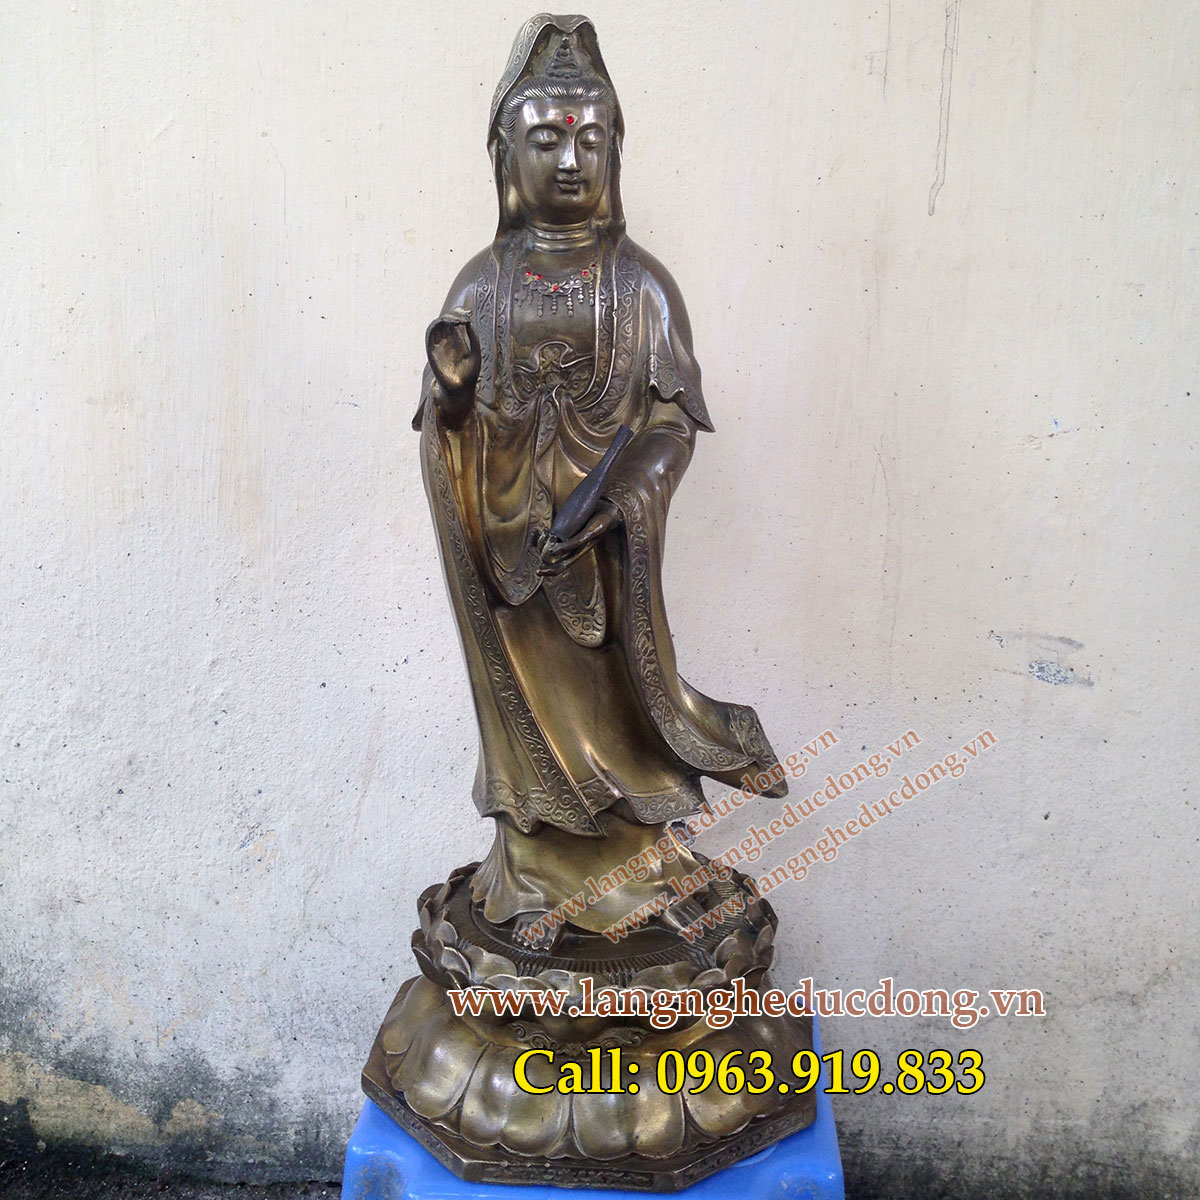 langngheducdong.vn - Phật Bà Quan Âm Bồ Tát cao 45cm, tượng quan âm